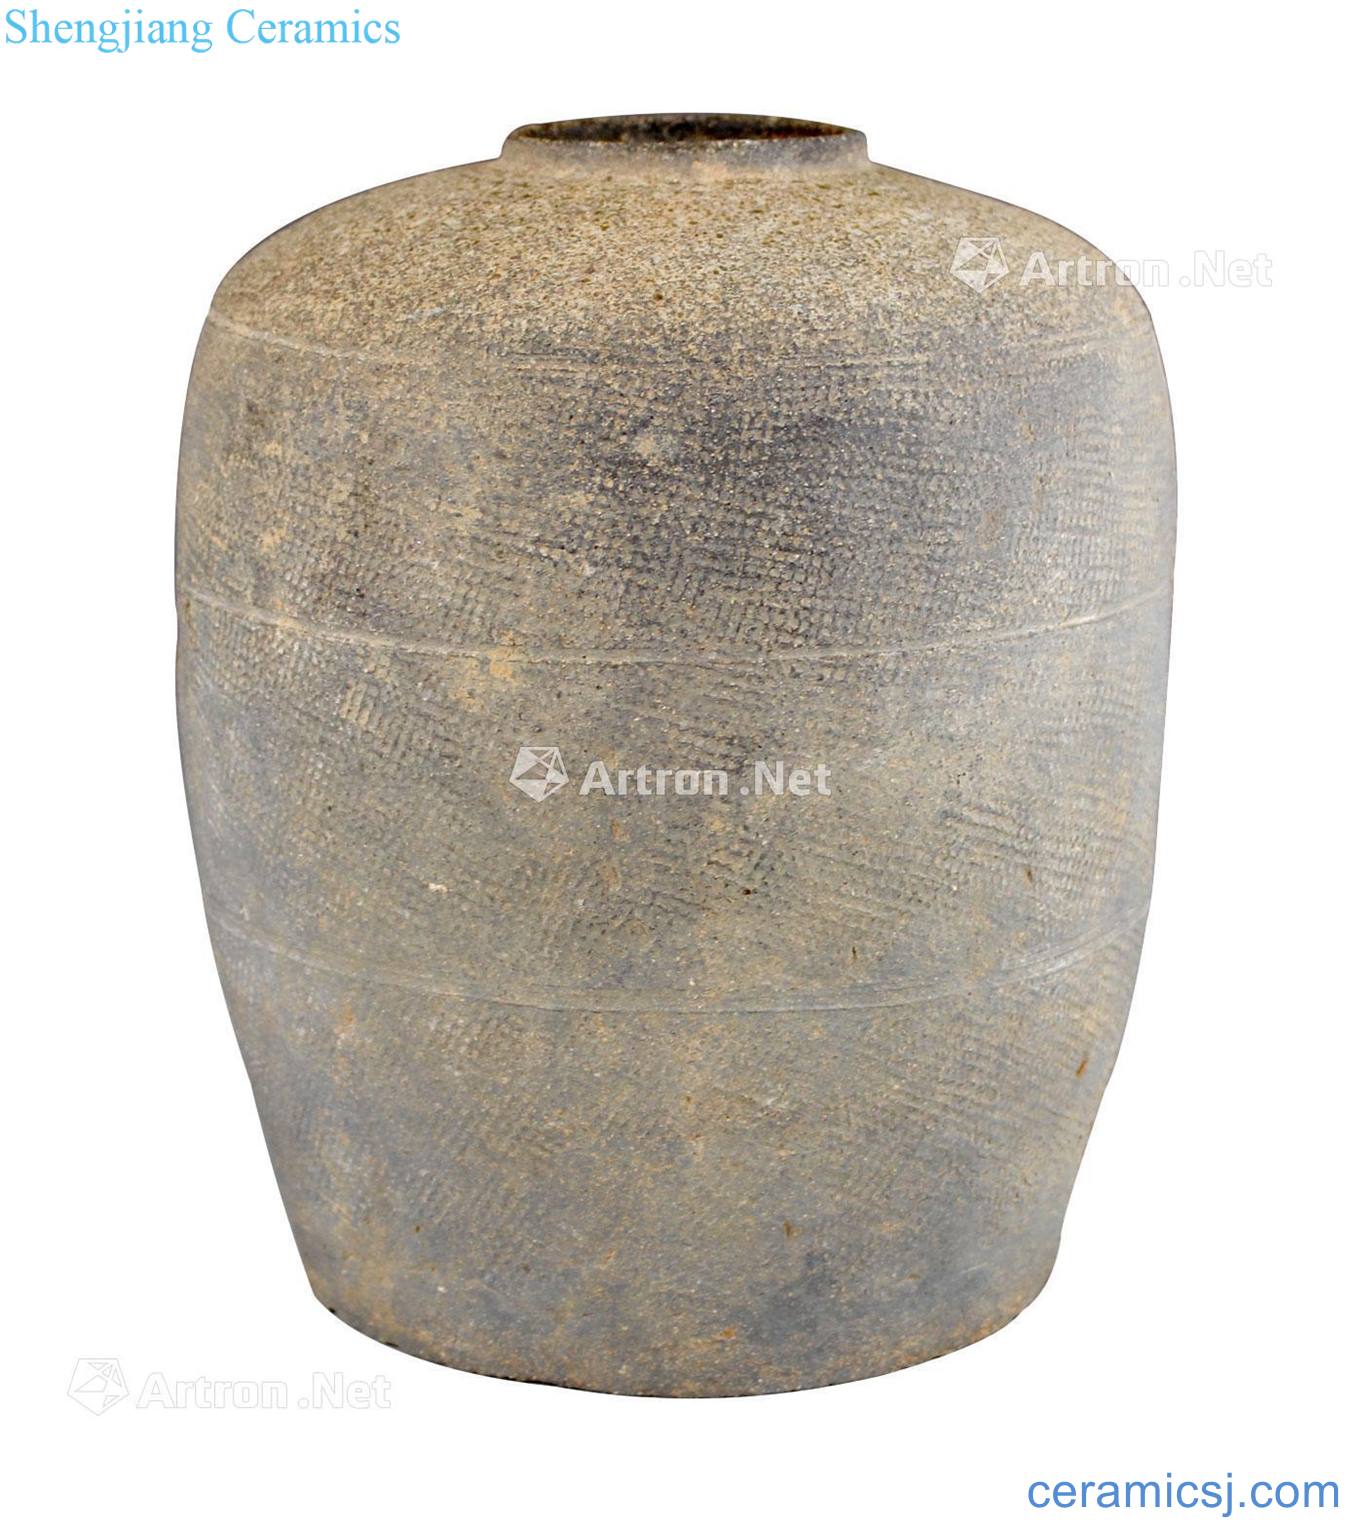 Mat erlitou grain black pottery